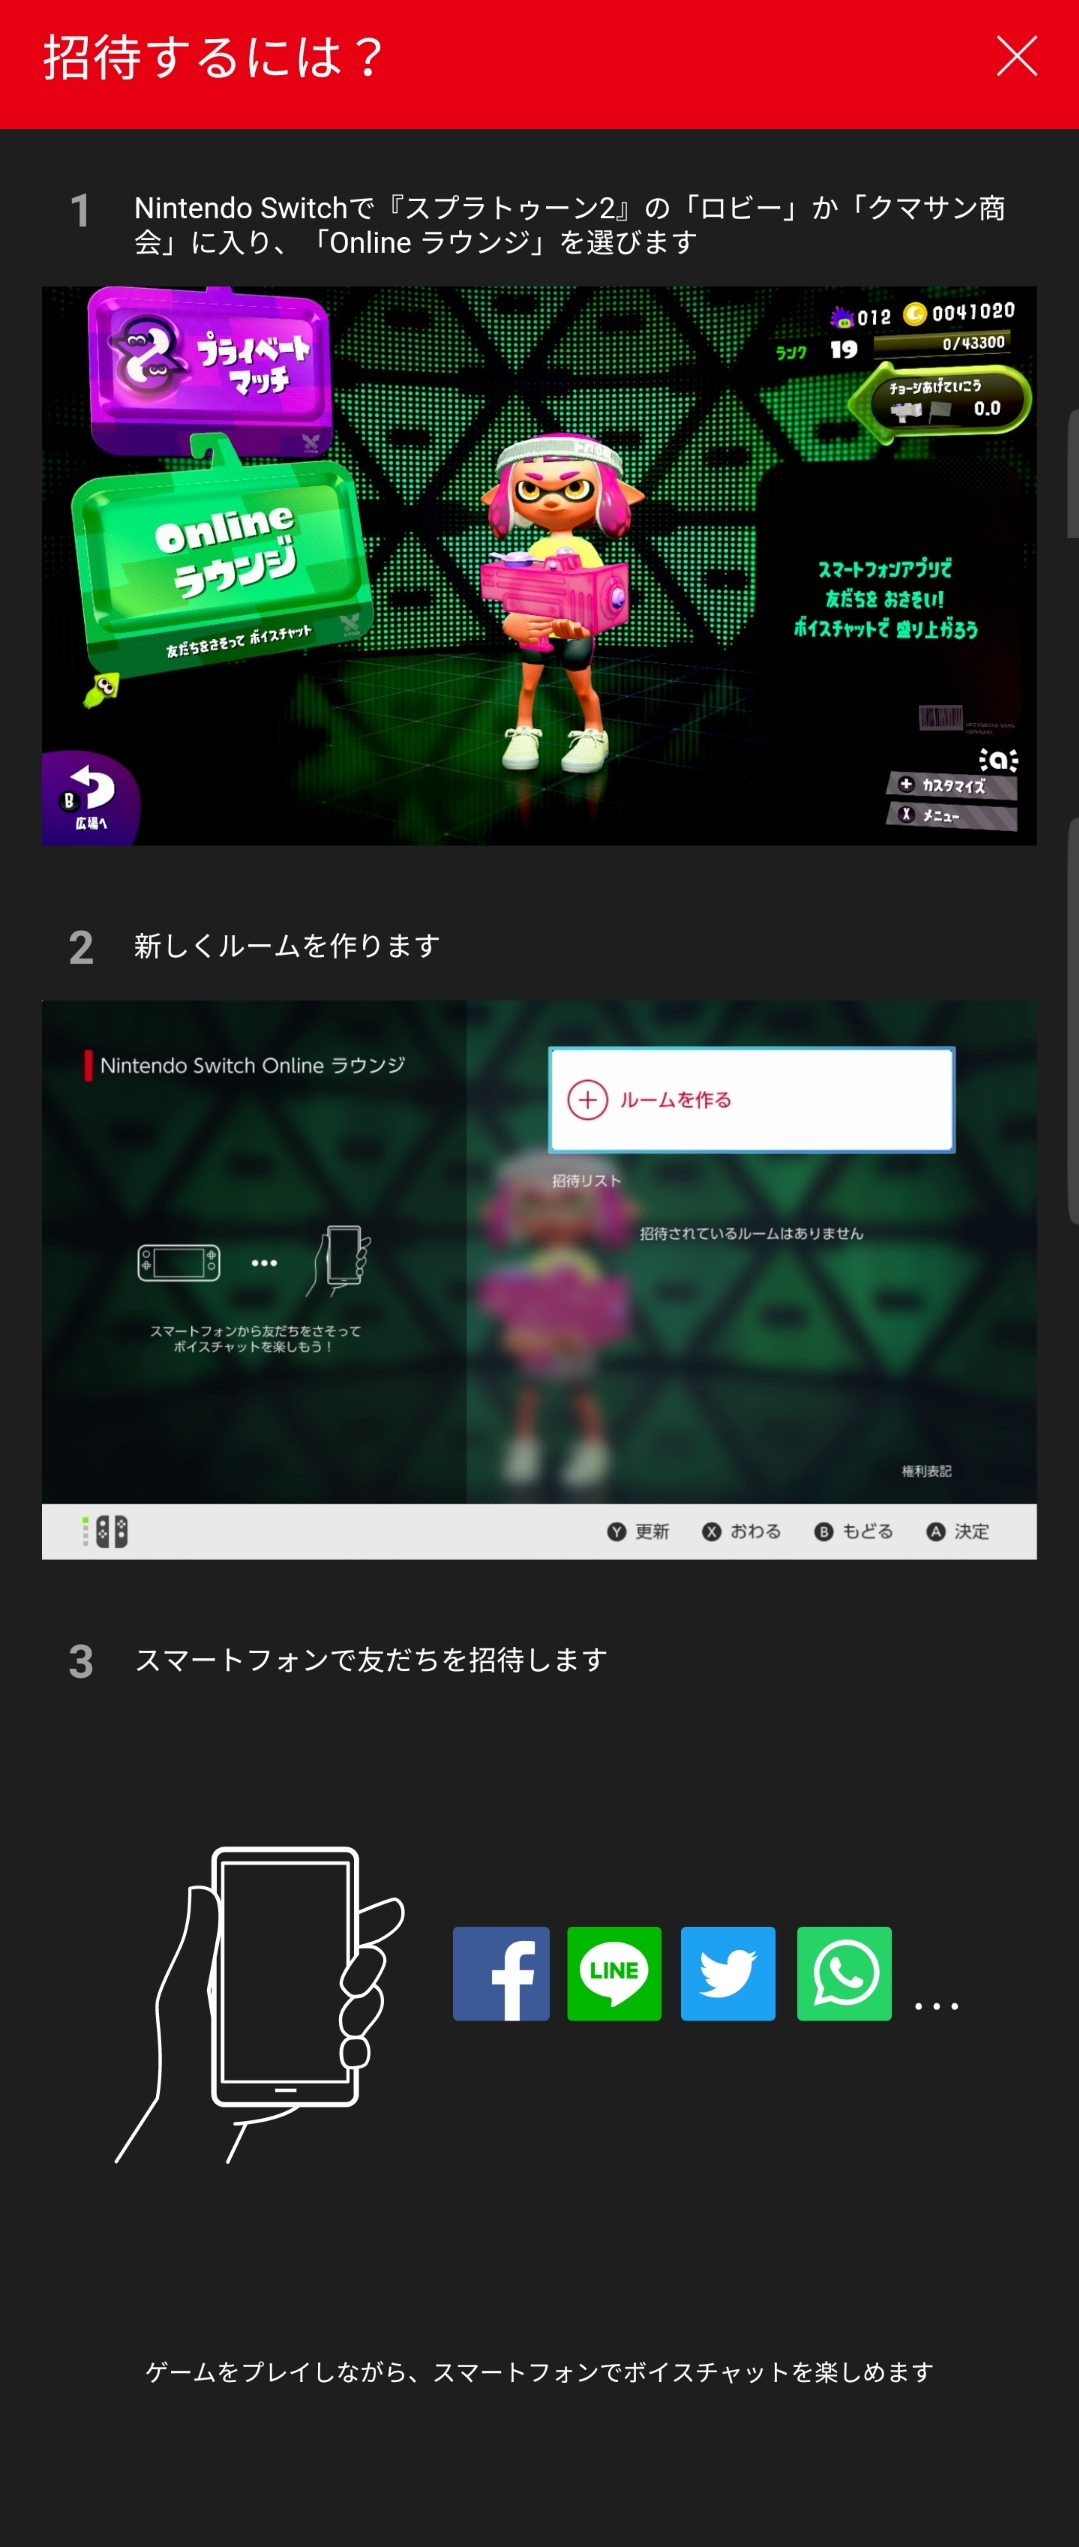 スプラトゥーン2連携アプリ Nintendo Switch Online 配信 戦績確認の イカリング2 音声チャットや招待も Engadget 日本版